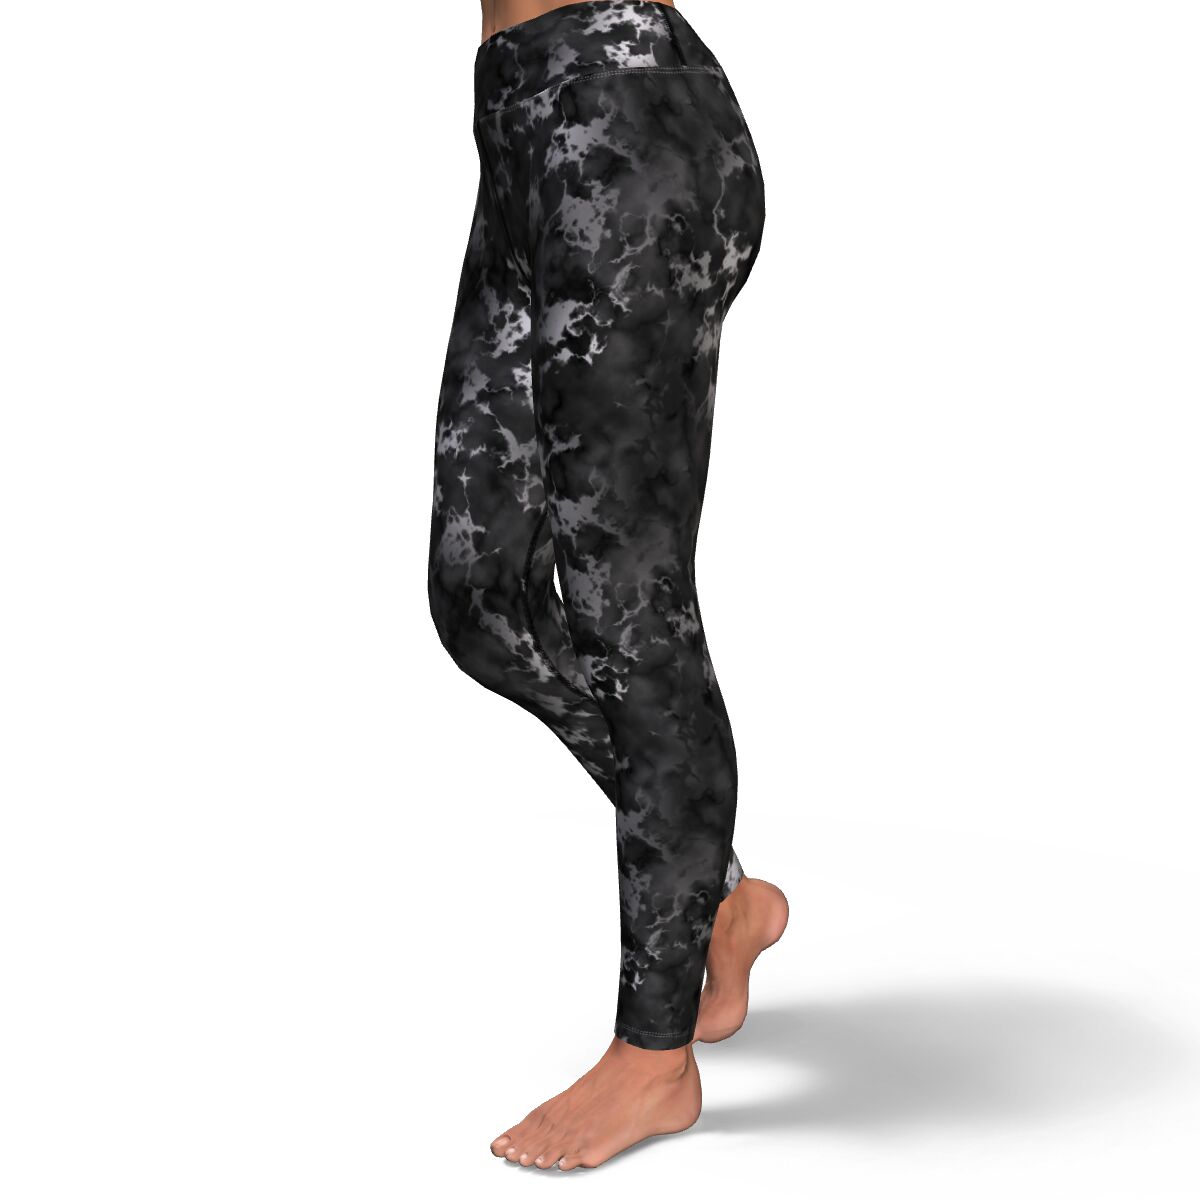 Women's Black Silver Gilded Marble High-waisted Yoga Leggings